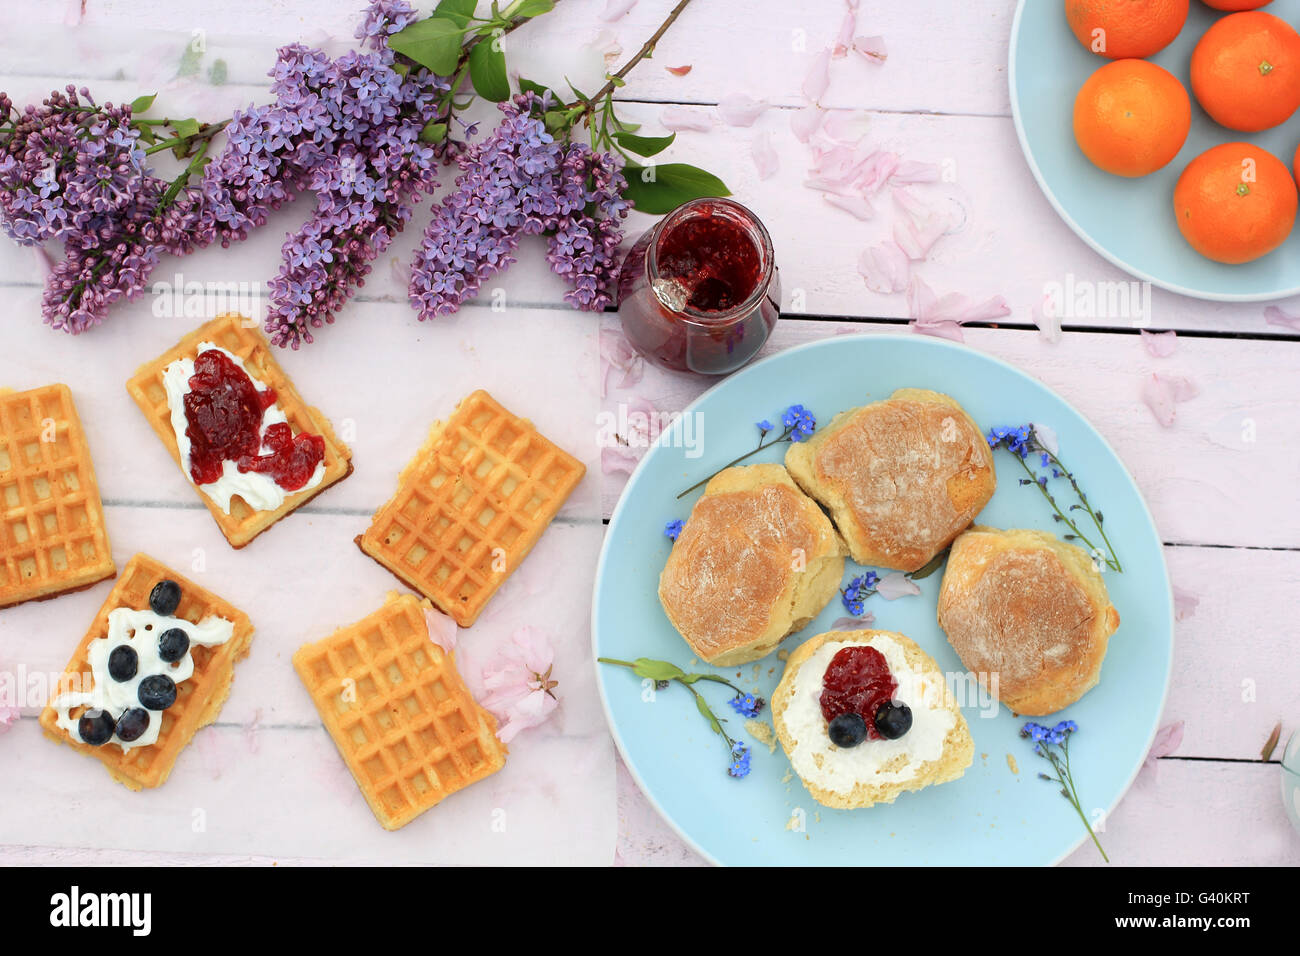 Belgique gaufres fraîchement cuits sur la table en bois romantique avec fleurs lilas Banque D'Images